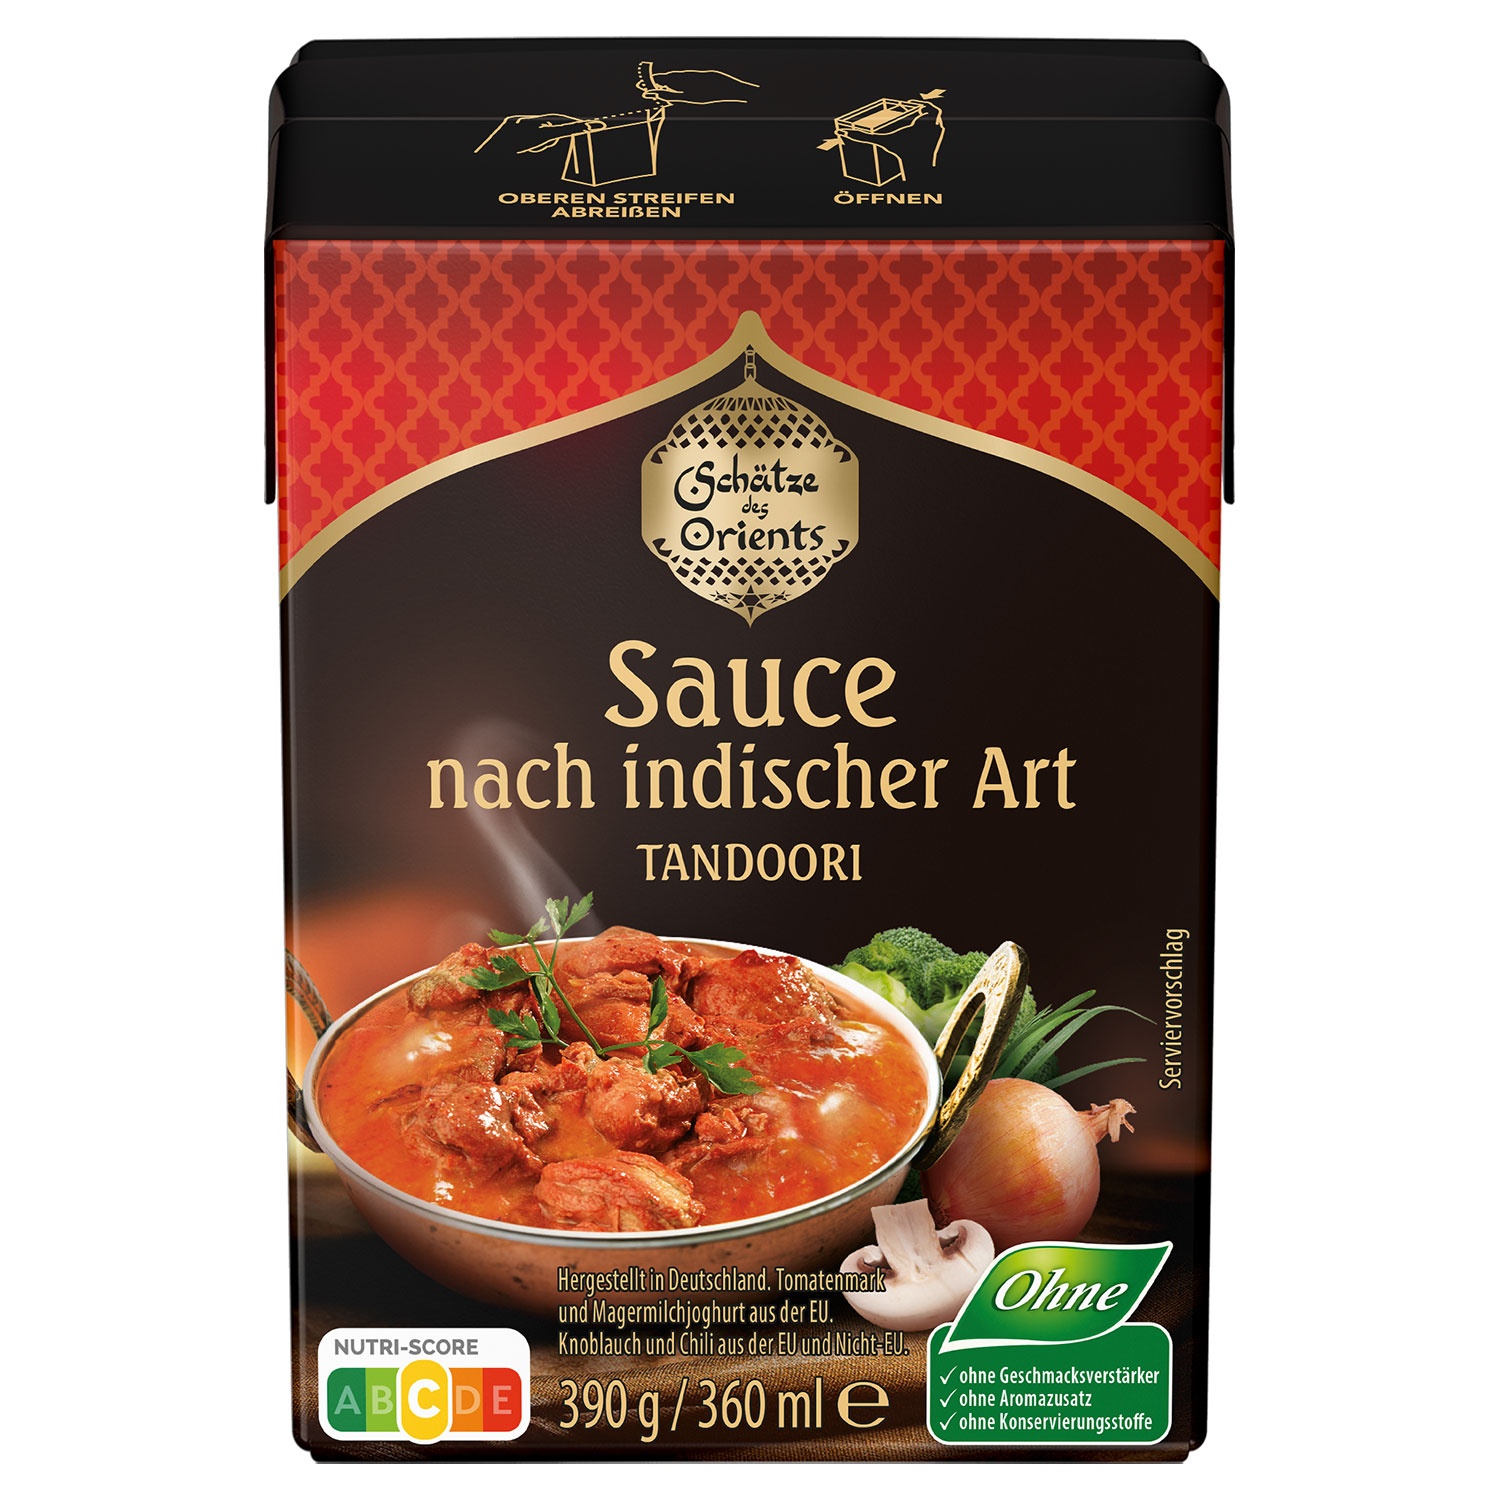 SCHÄTZE DES ORIENTS Sauce nach indischer Art 390 g